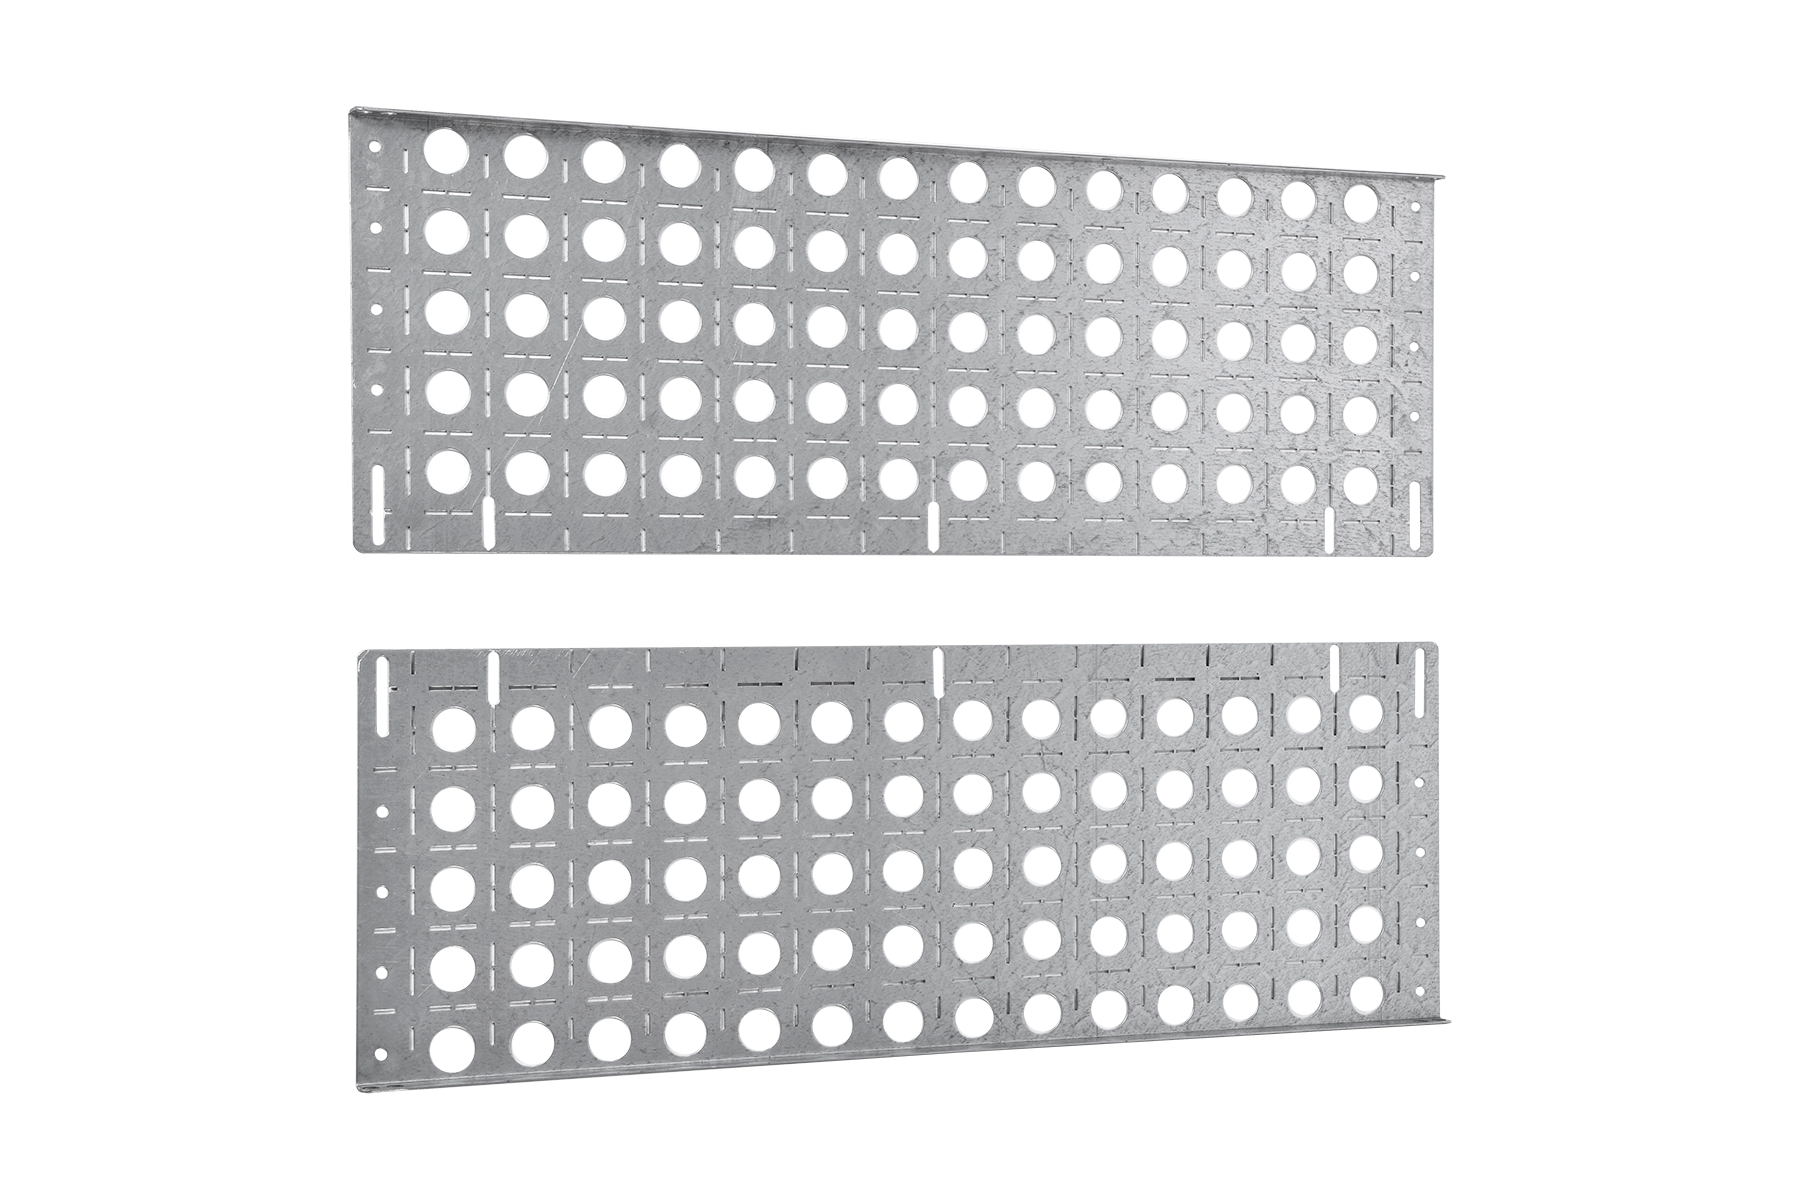 Комплект боковых монтажных панелей 19" (В600 × Г300) с уголками для крепления оборудования